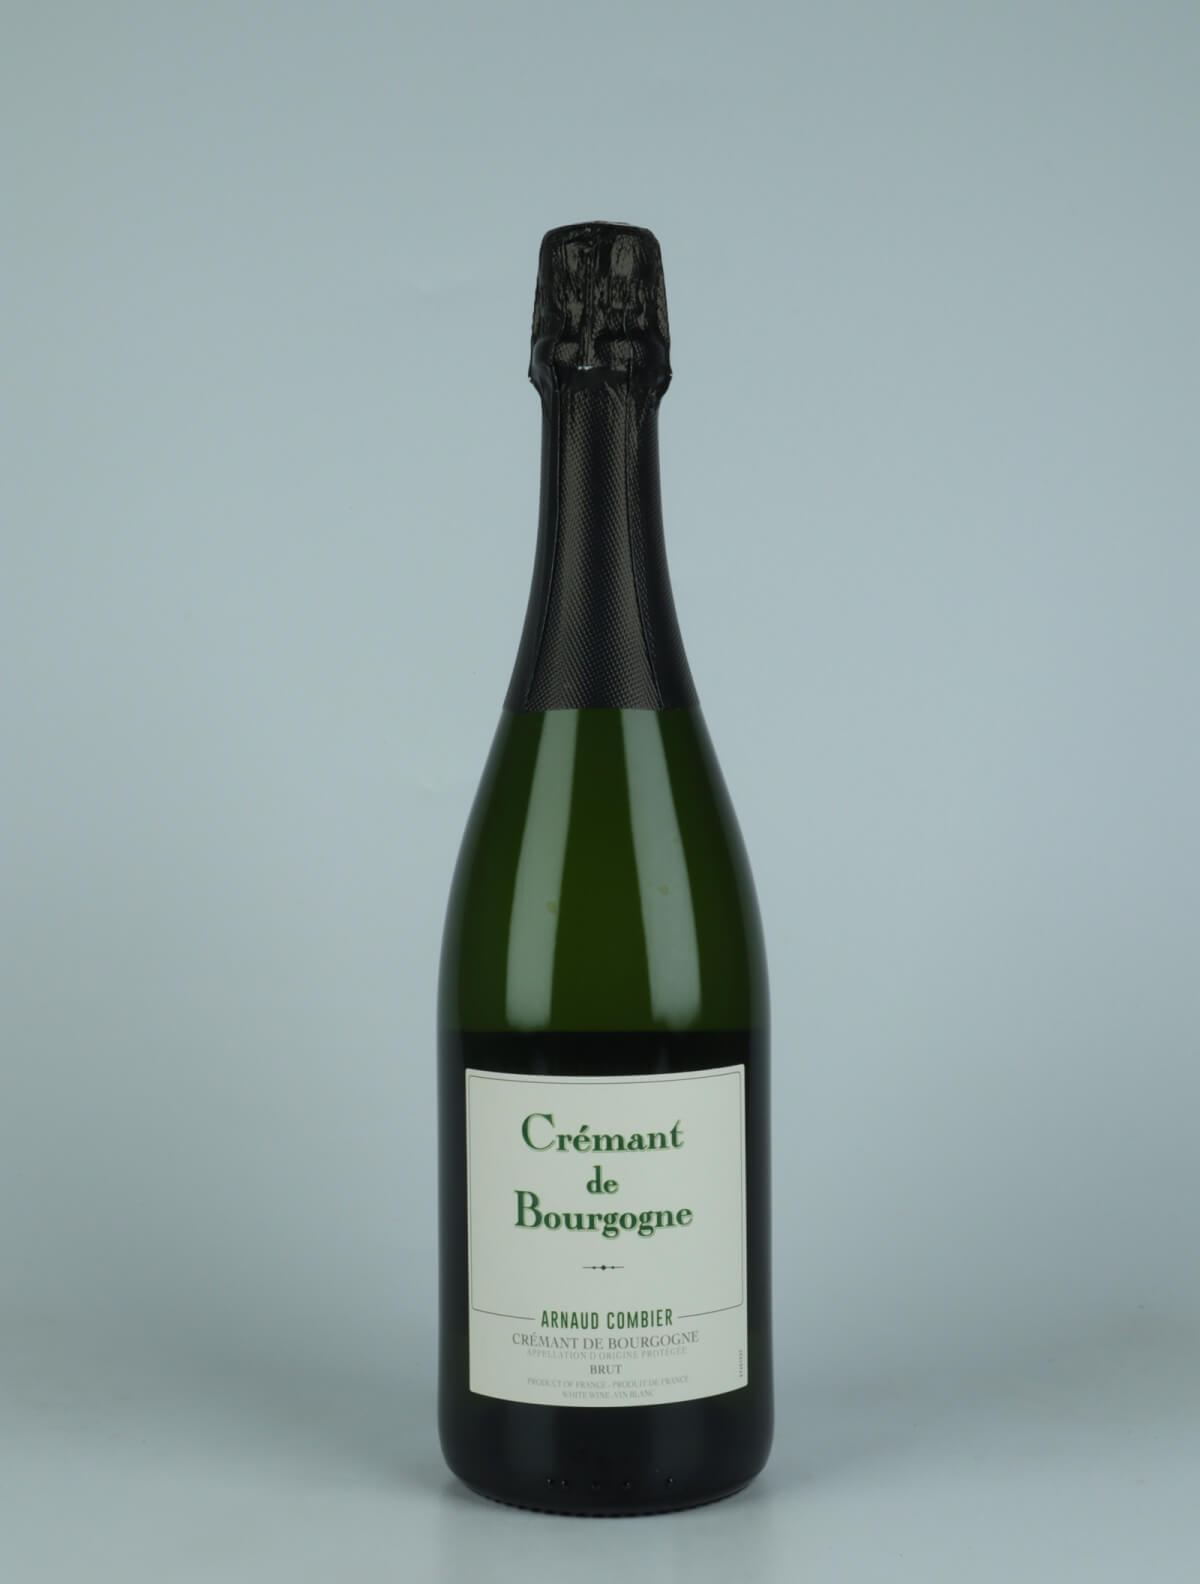 En flaske N.V. Crémant de Bourgogne Mousserende fra Arnaud Combier, Bourgogne i Frankrig